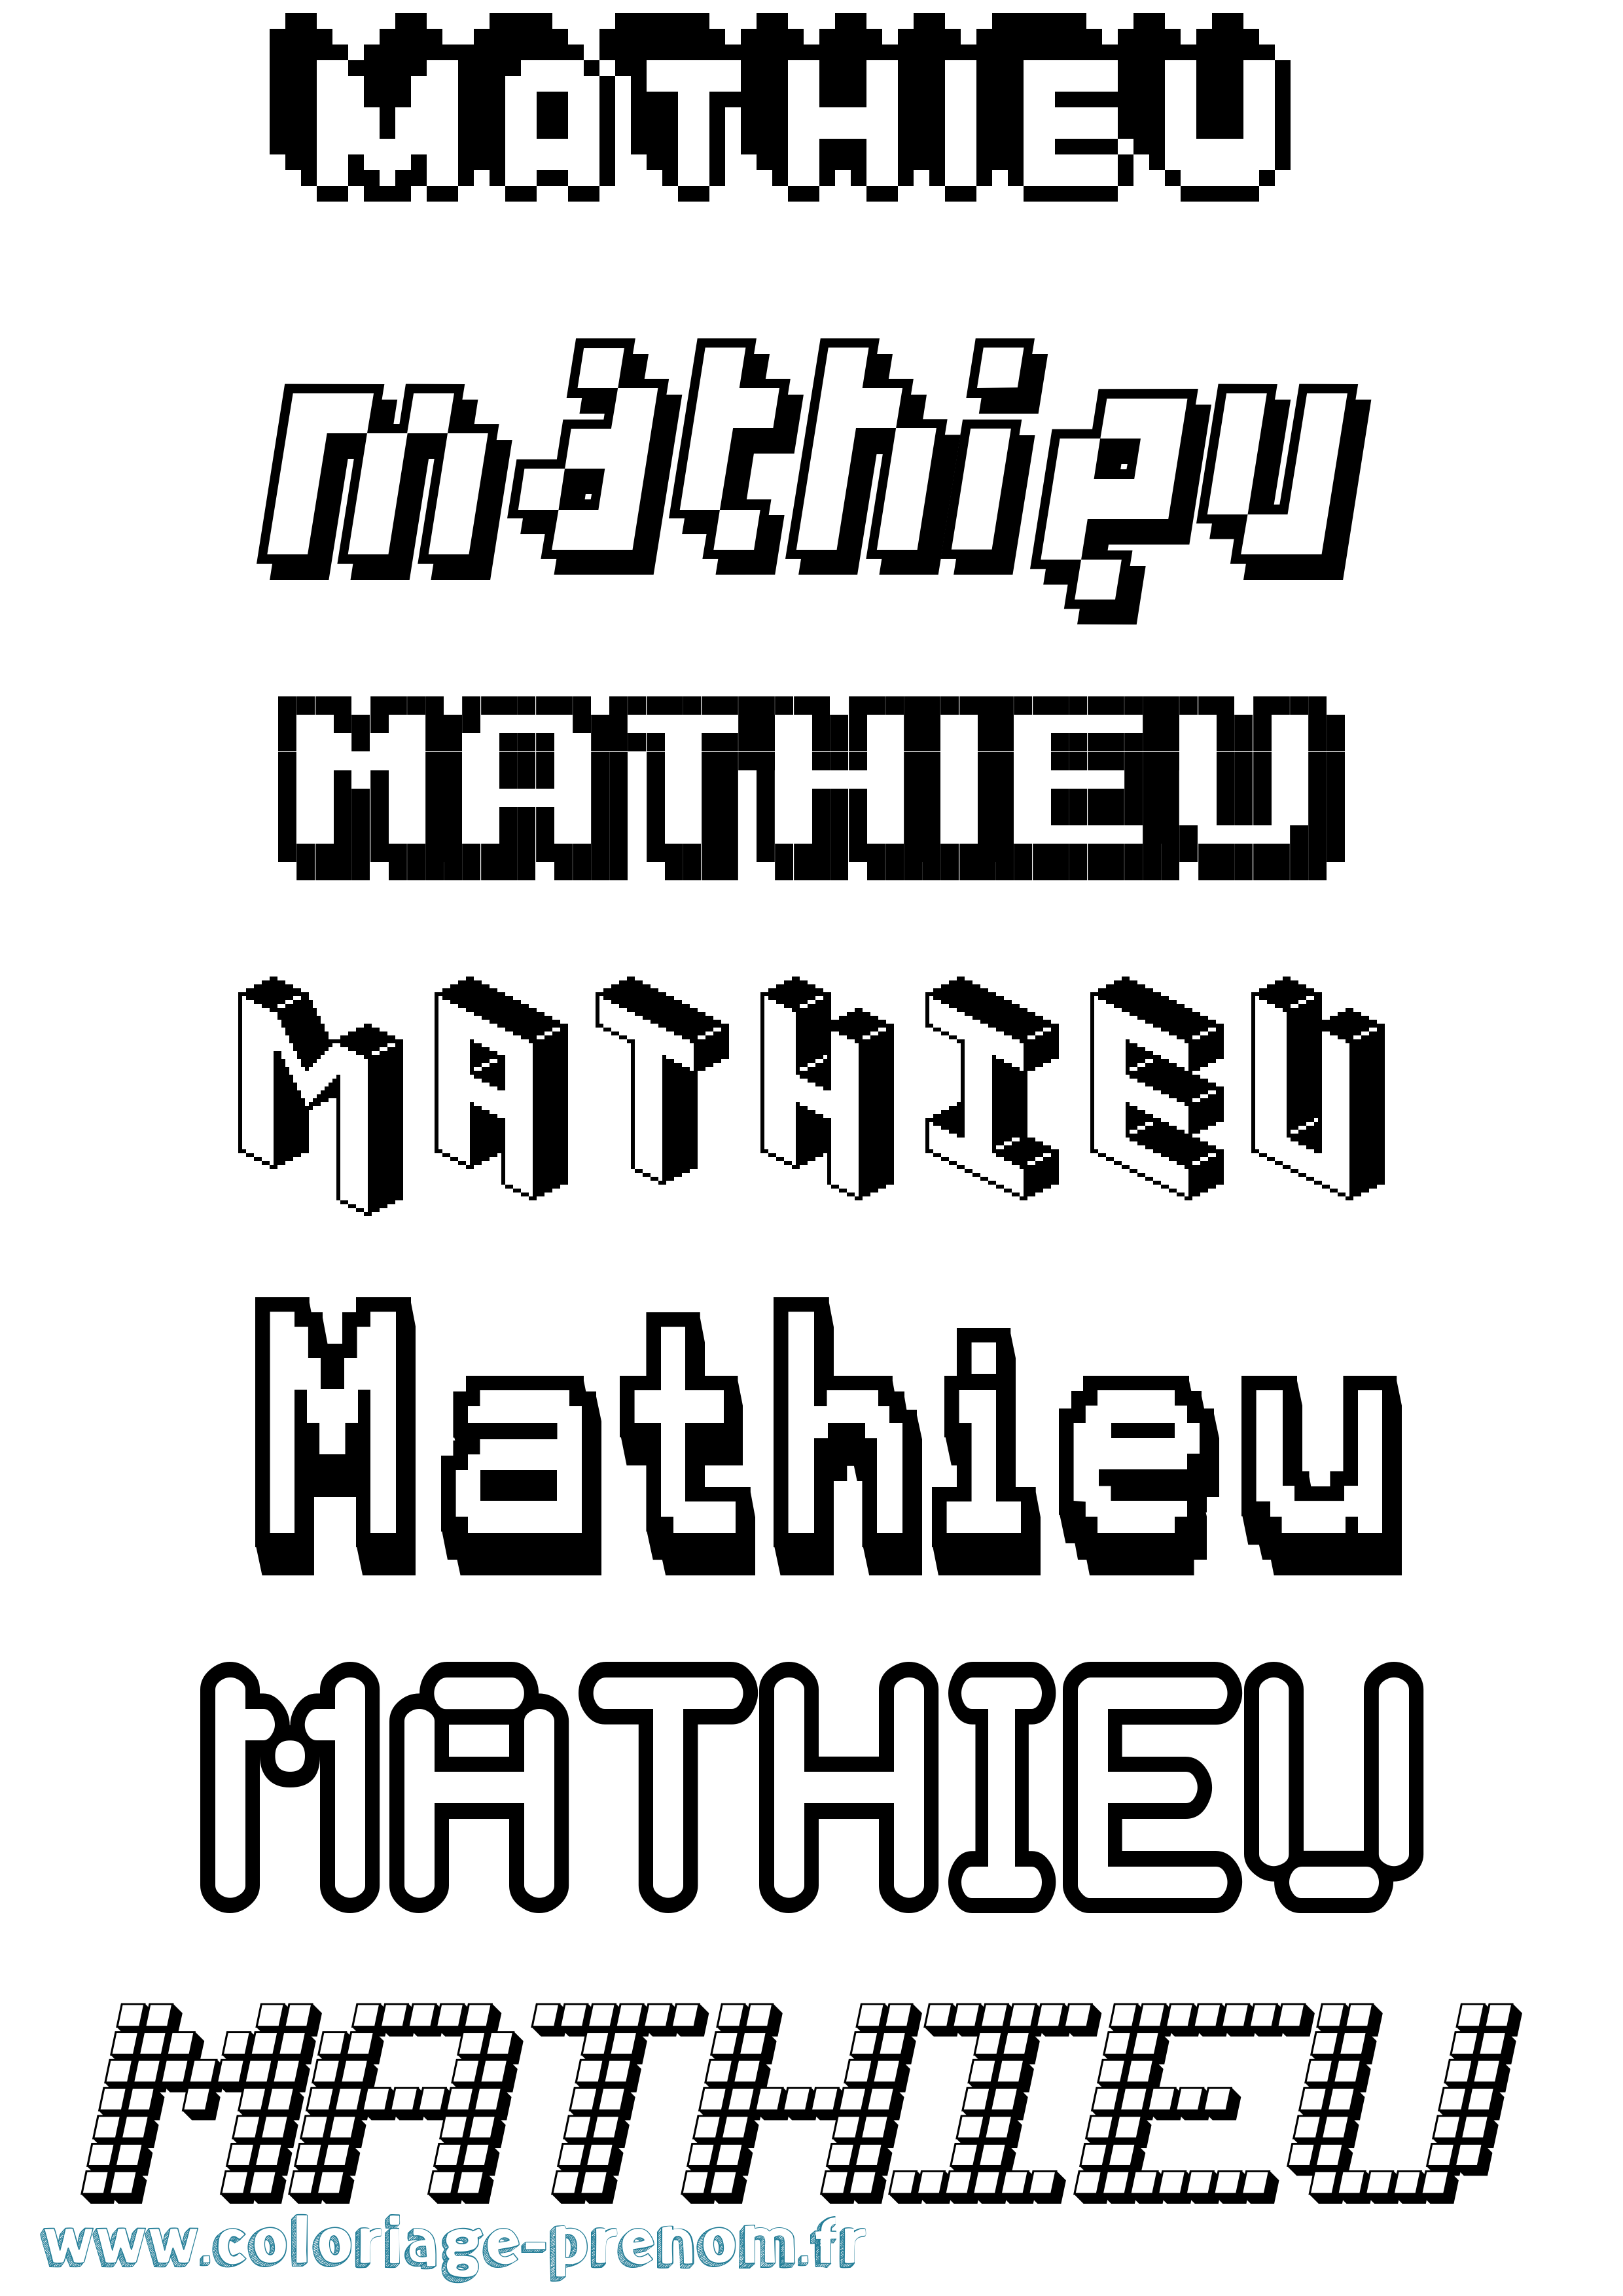 Coloriage prénom Mathieu